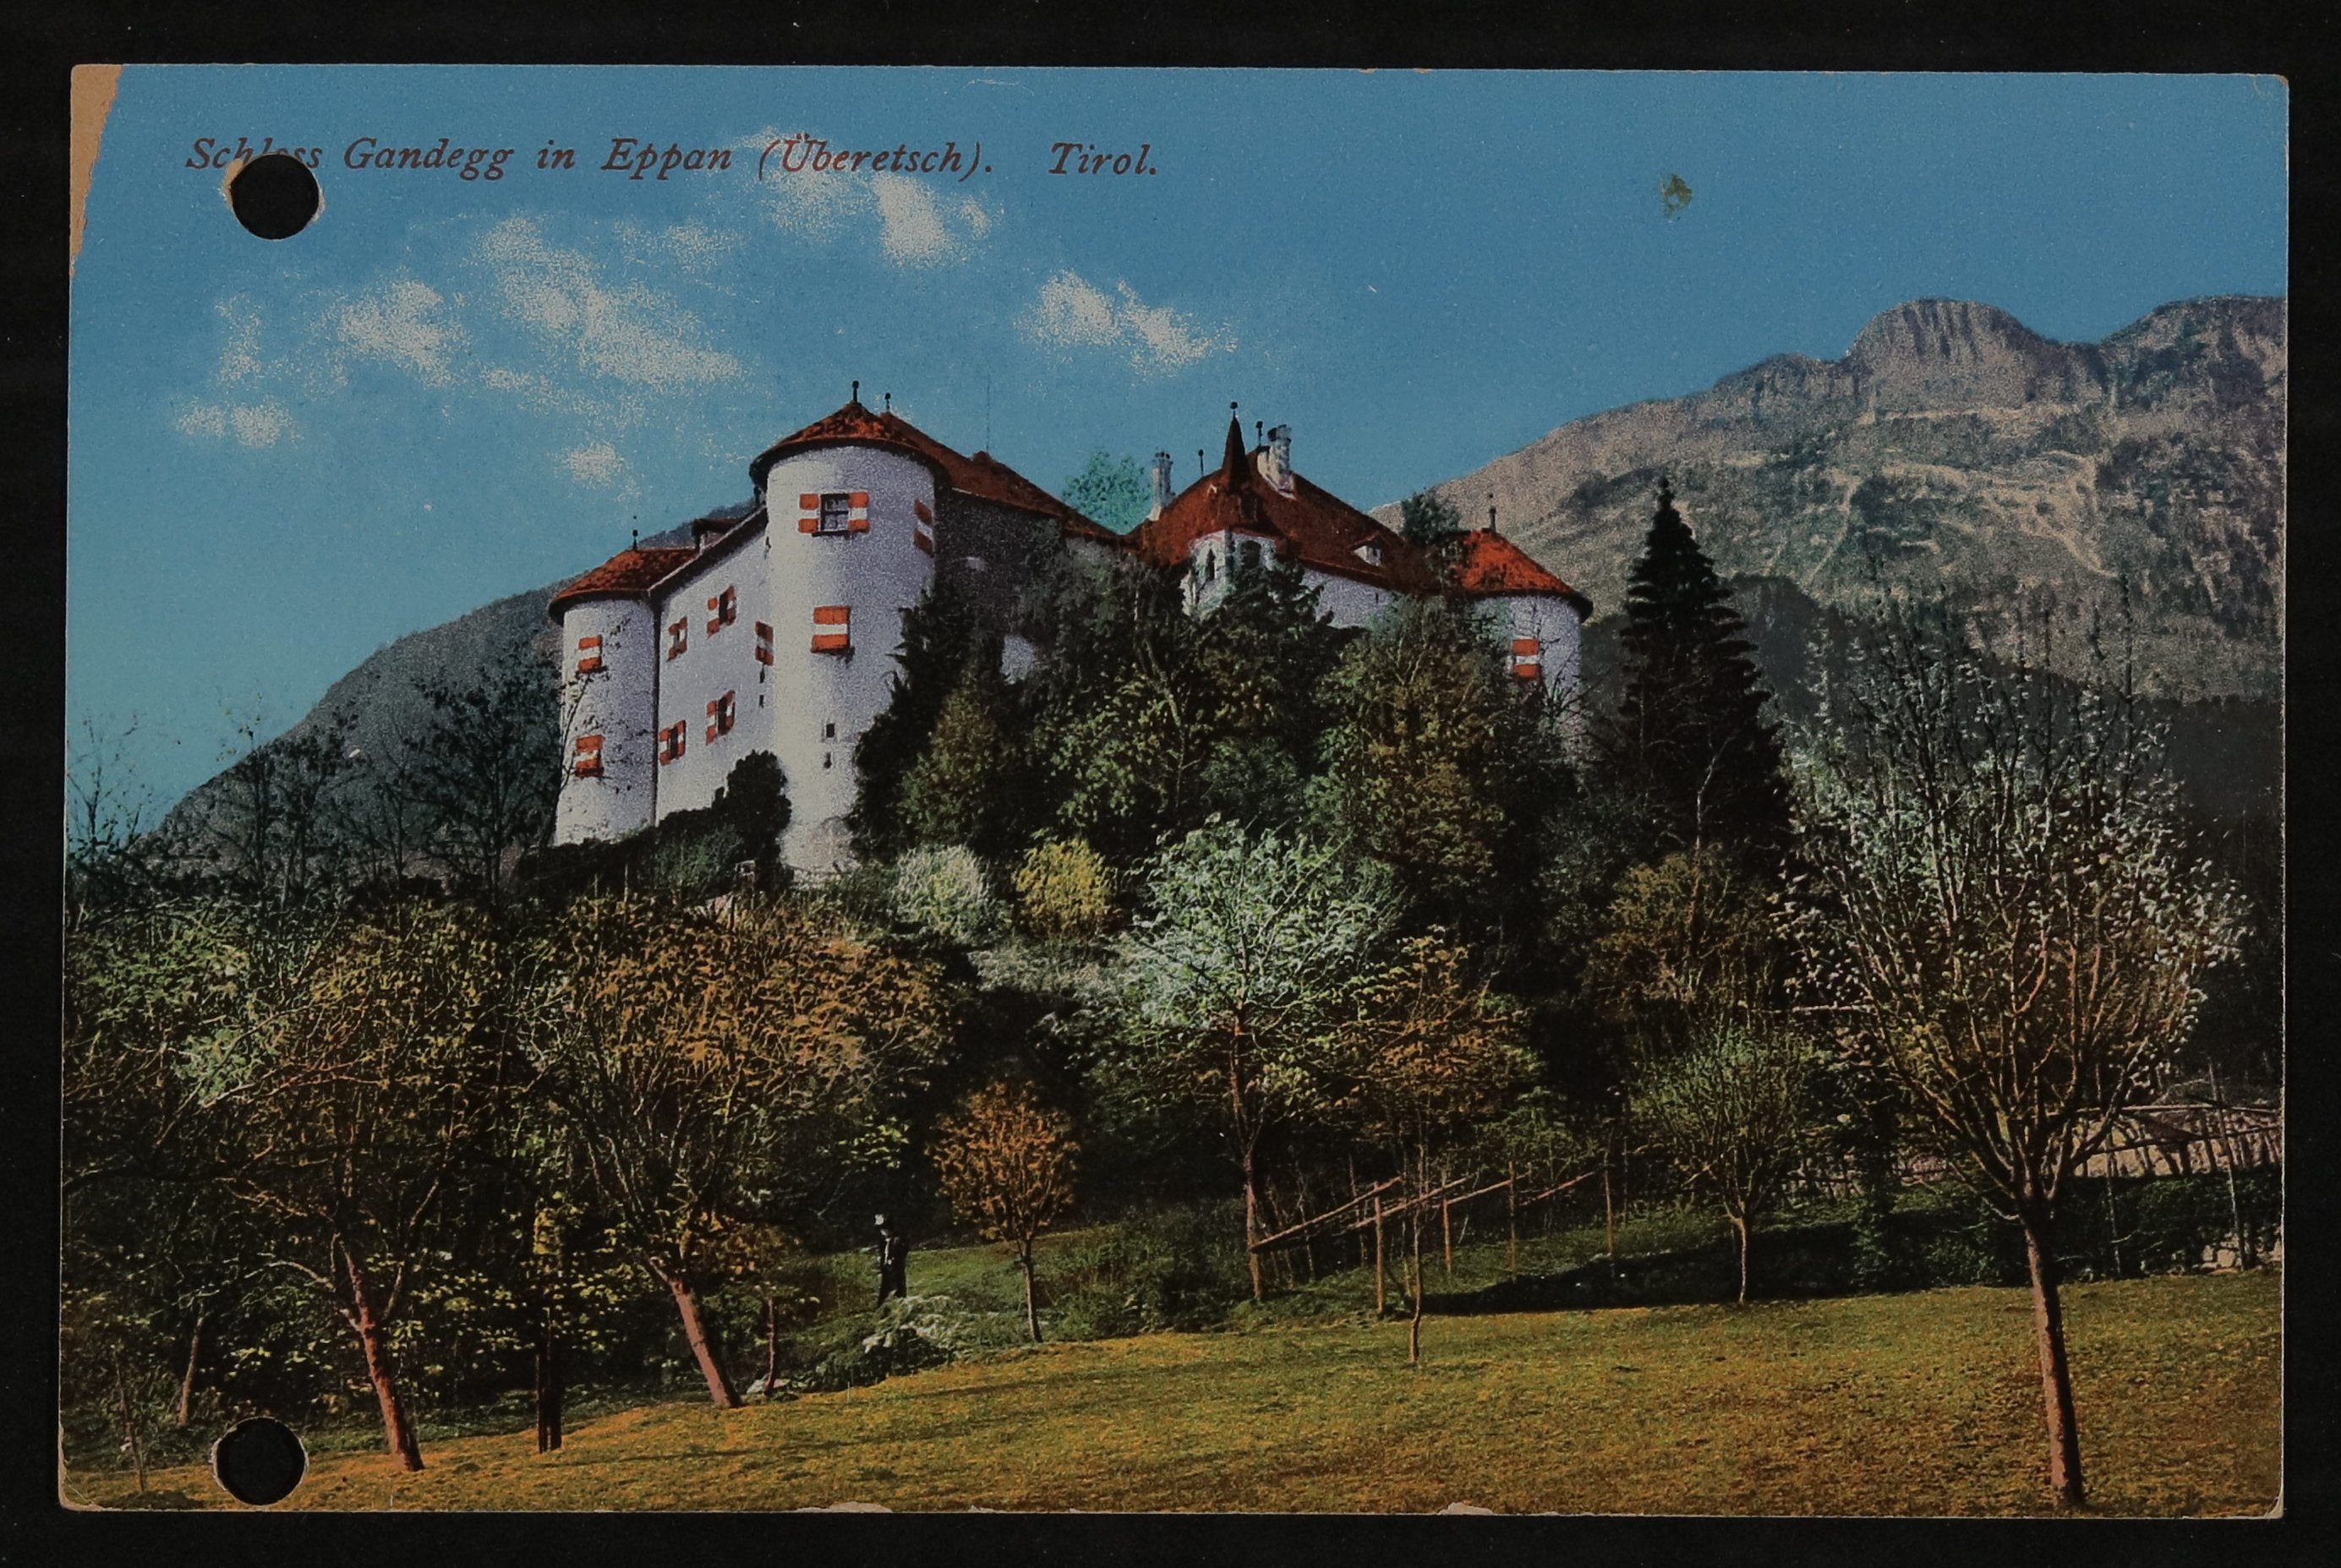 Ansichtskarte von Hofmannsthal an Adolph Fürstner vom Schloss Gandegg, Tirol vom 21. September 1912 (Freies Deutsches Hochstift / Frankfurter Goethe-Museum CC BY-NC-SA)